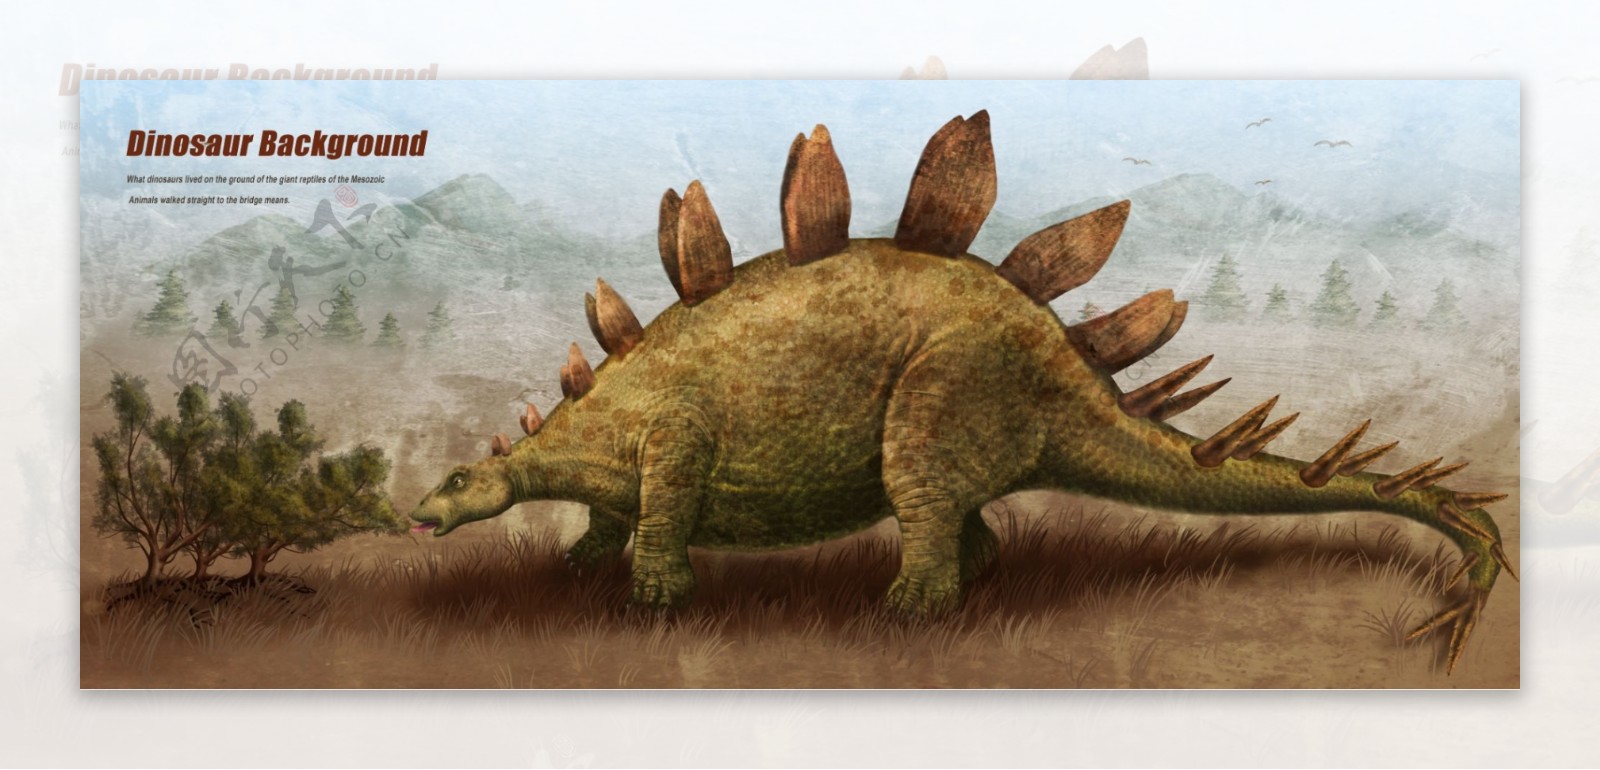 复古恐龙展示海报